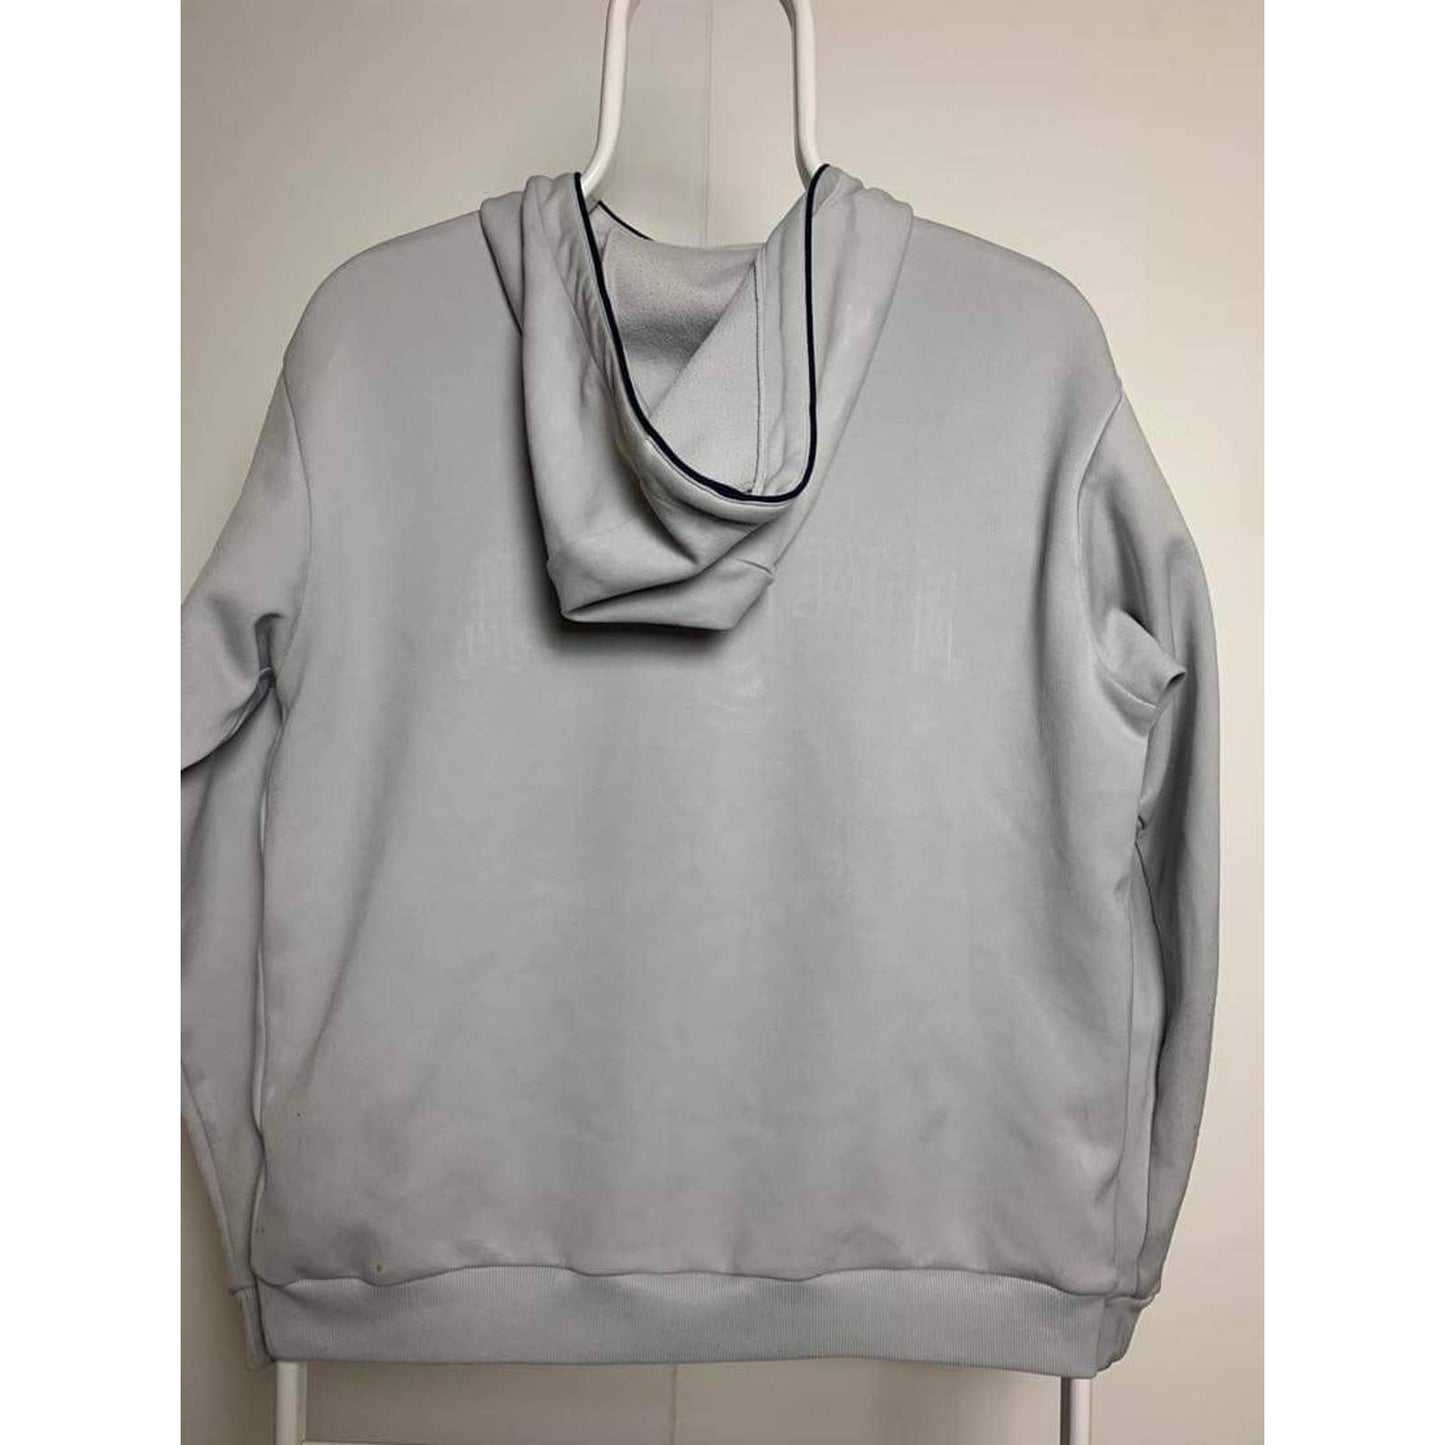 Nike Athletic vintage hoodie grey sweatshirt big logo 2000s